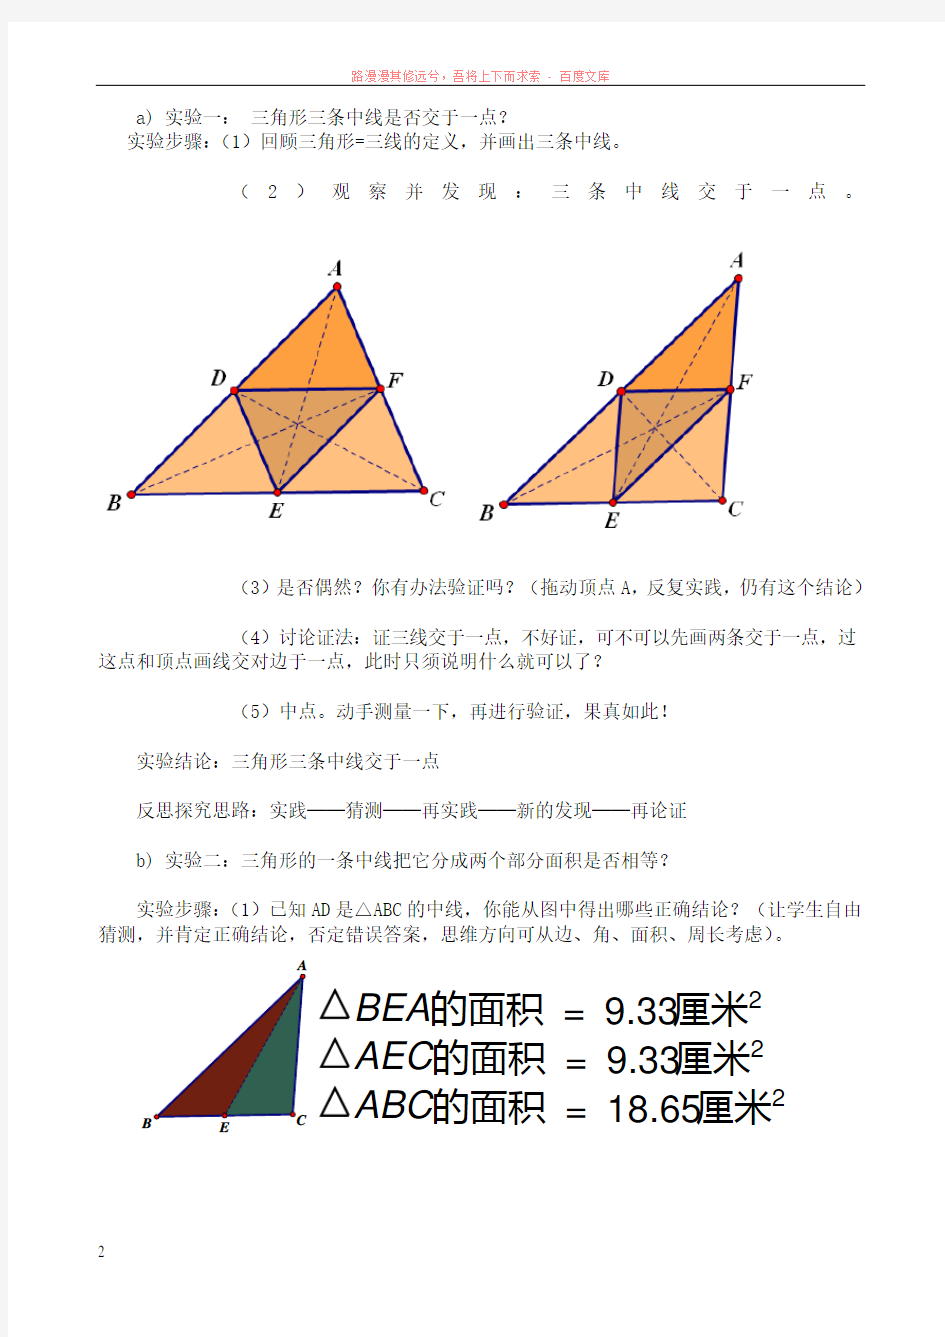 数学课题几何画板在初中数学中的应用研究案例 (1)